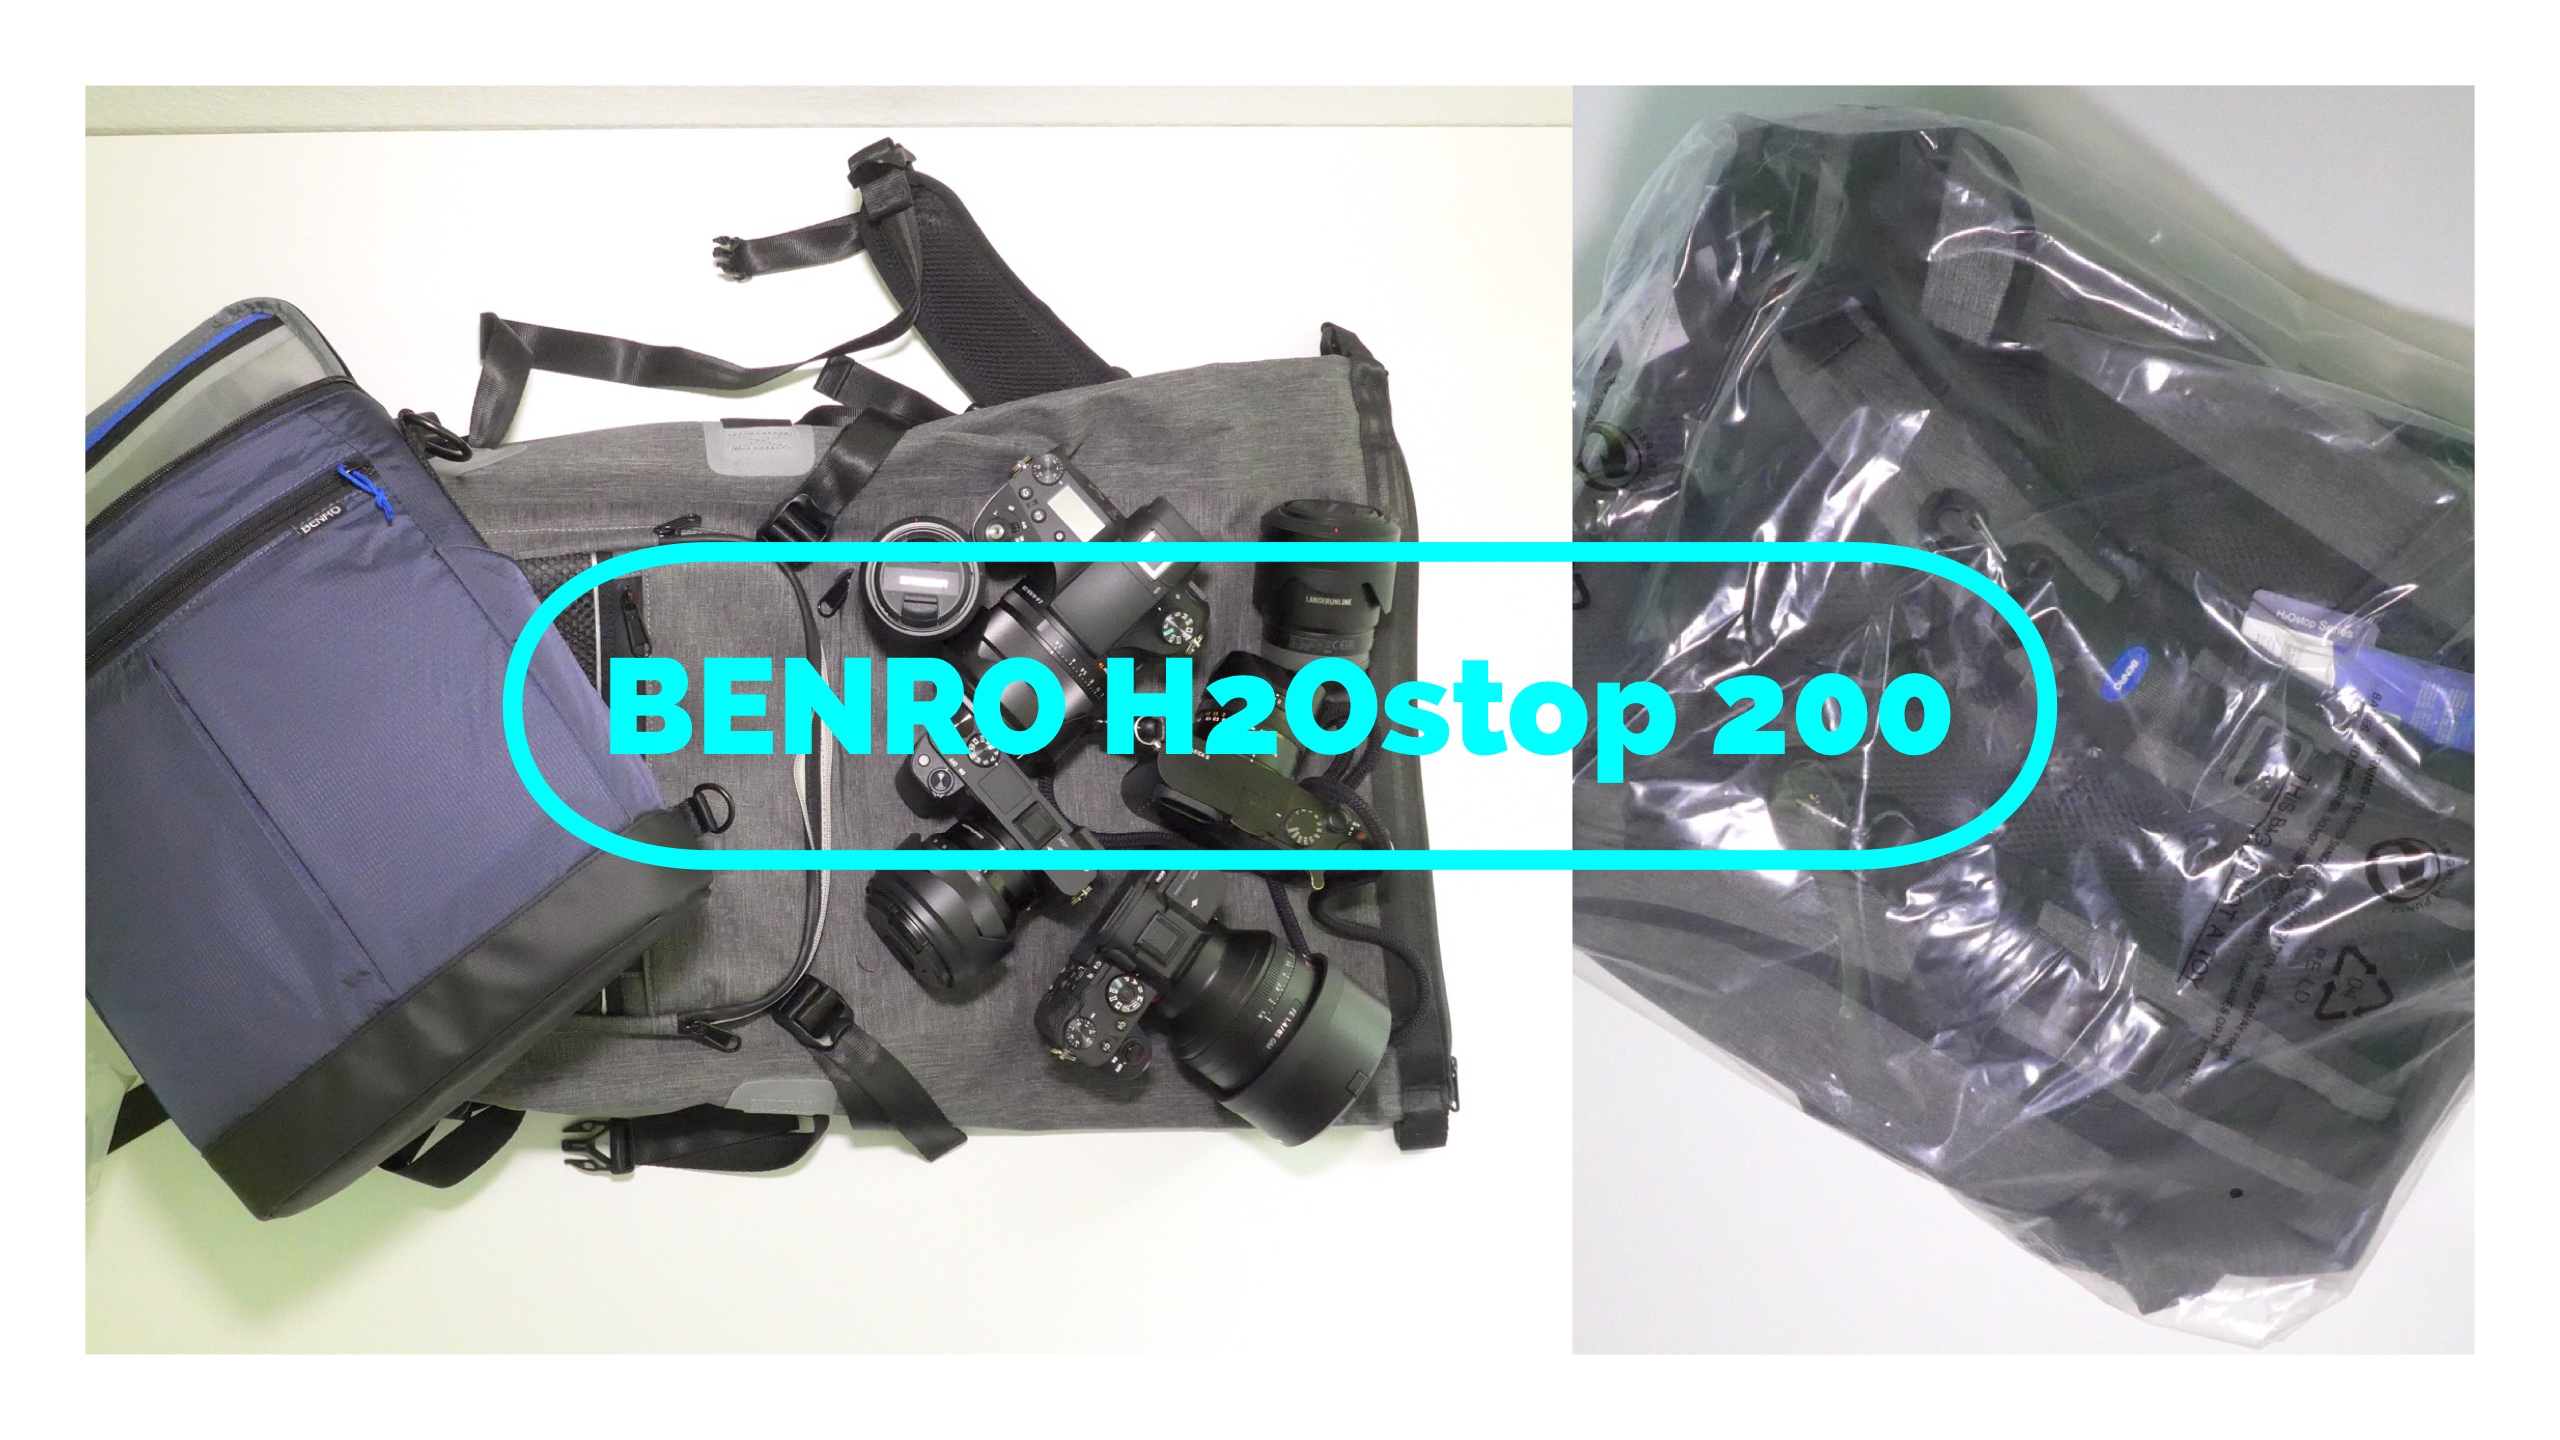 H2Ostop – die neue Serie von Benro – hier der H2Ostop 200 Foto-Rucksack